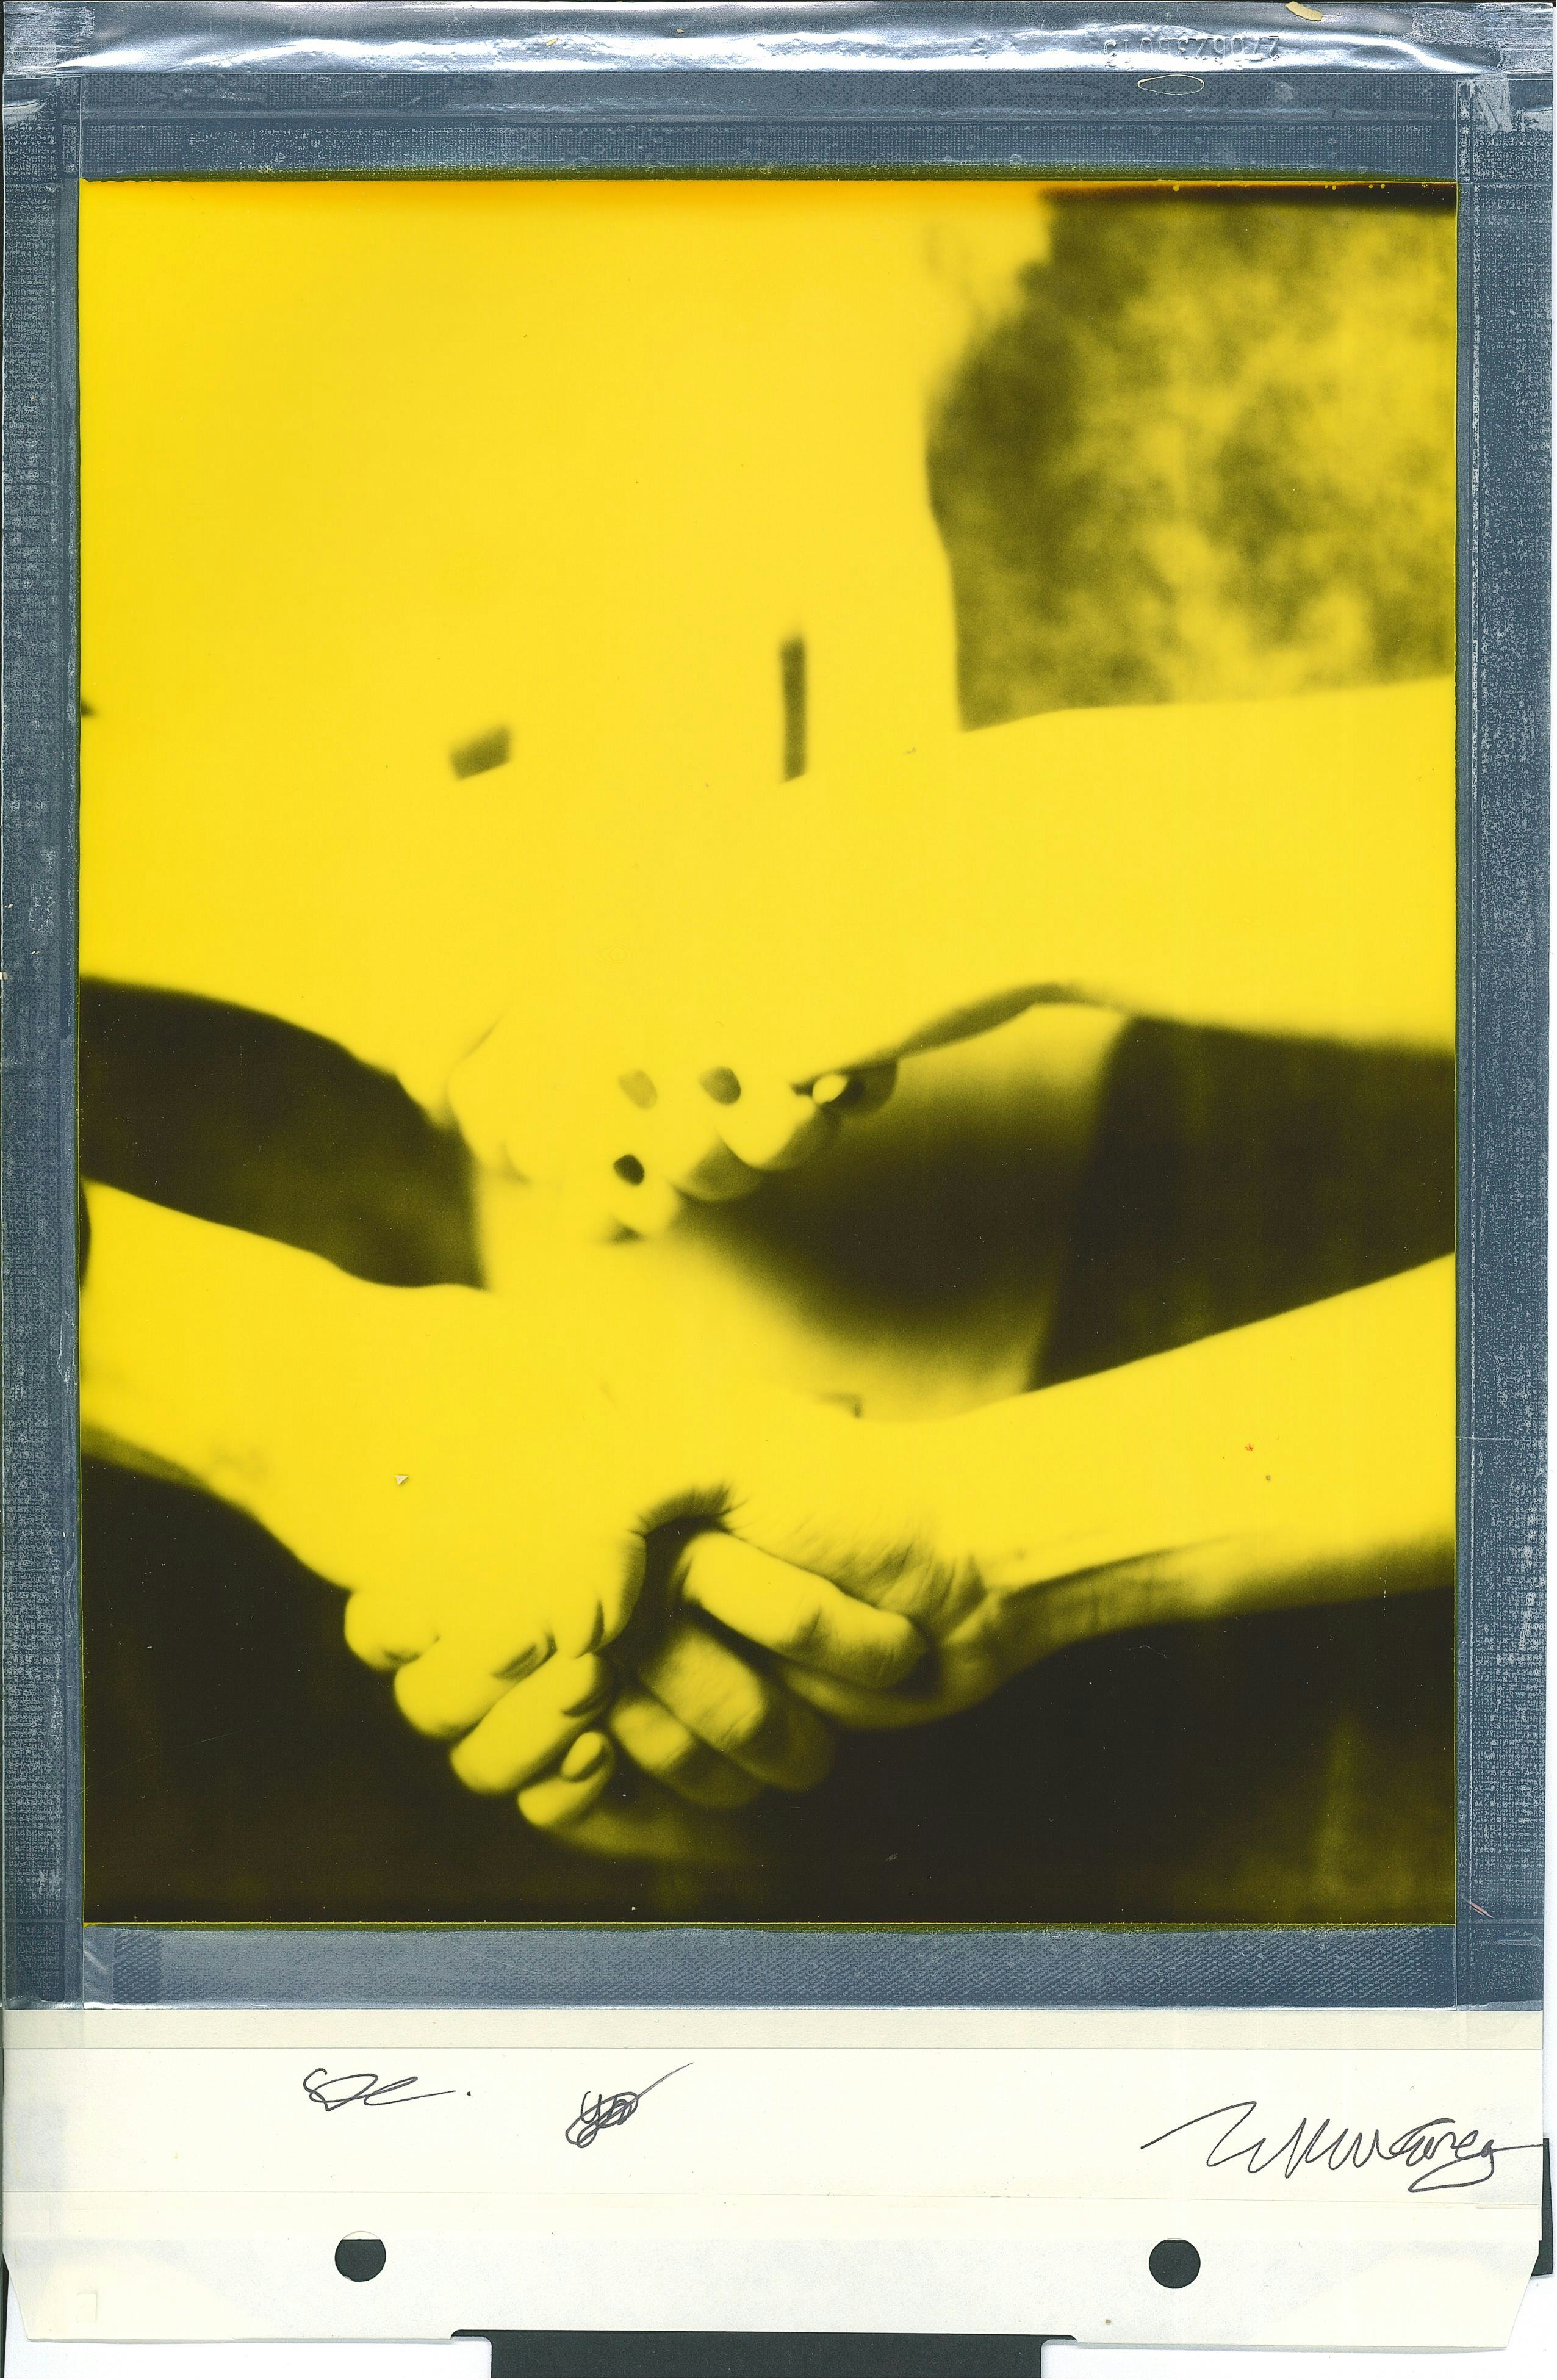 Polaroid handshake yellow